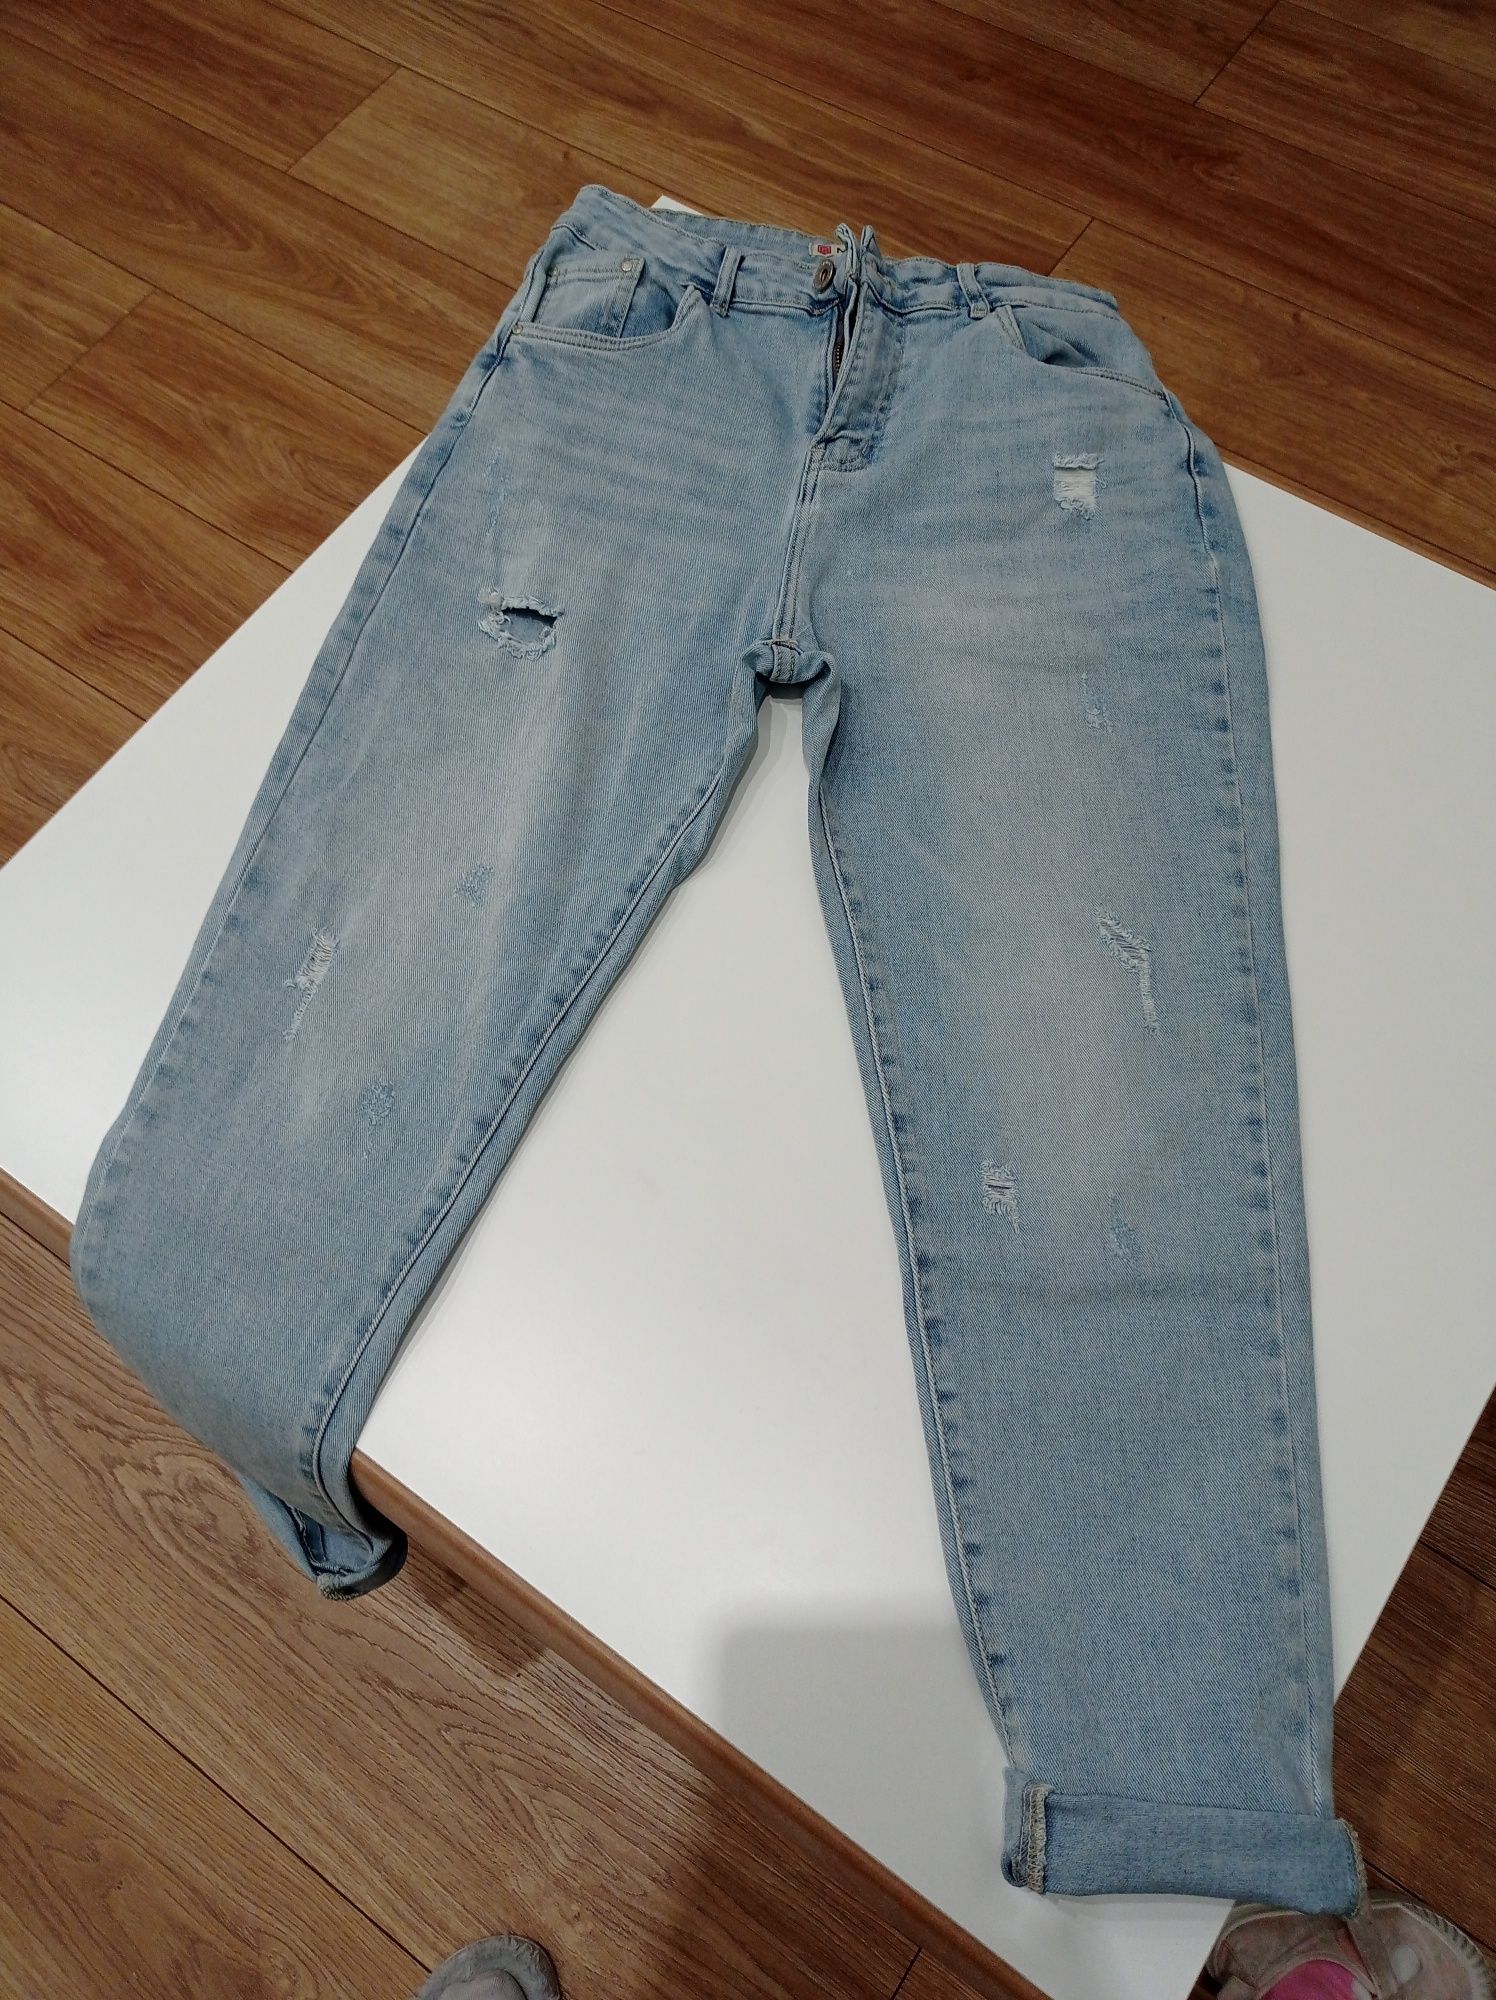 Spodnie jeansowe damskie M